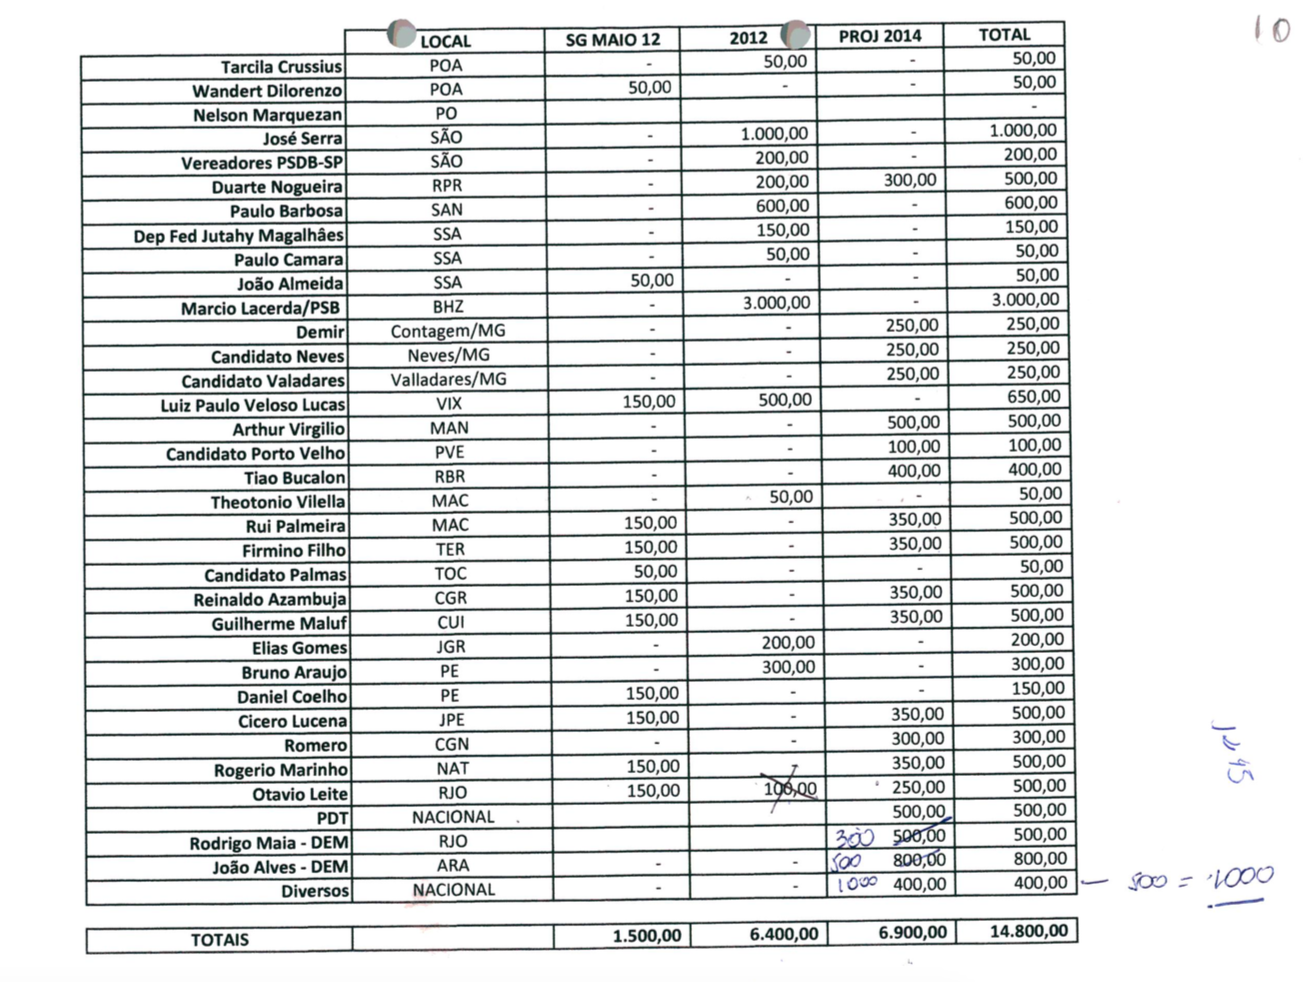 tabela da corrupção 3